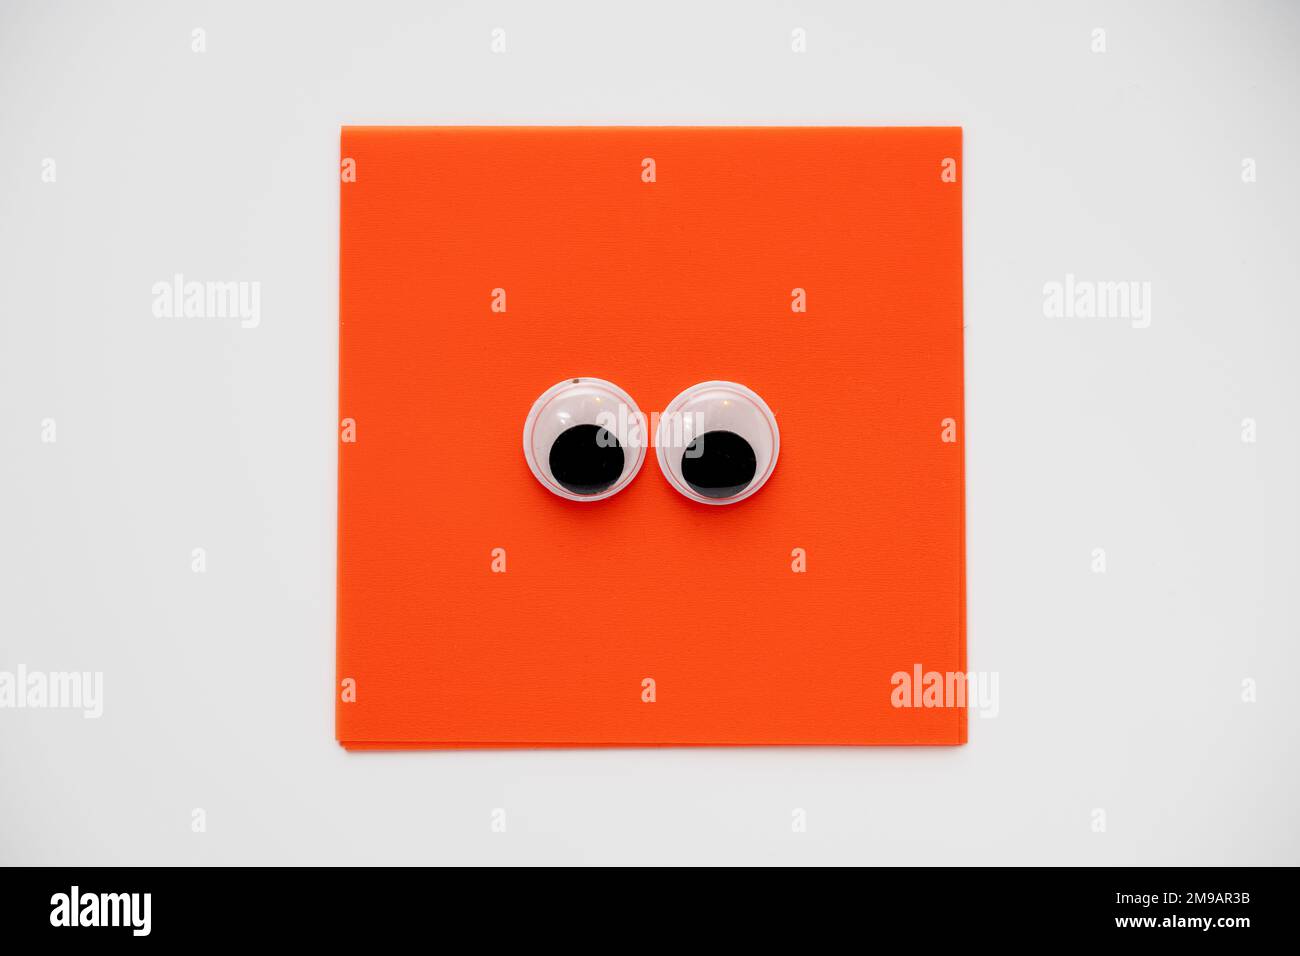 Paire de jolis yeux sur un bloc-notes carré orange isolé sur un fond blanc Banque D'Images